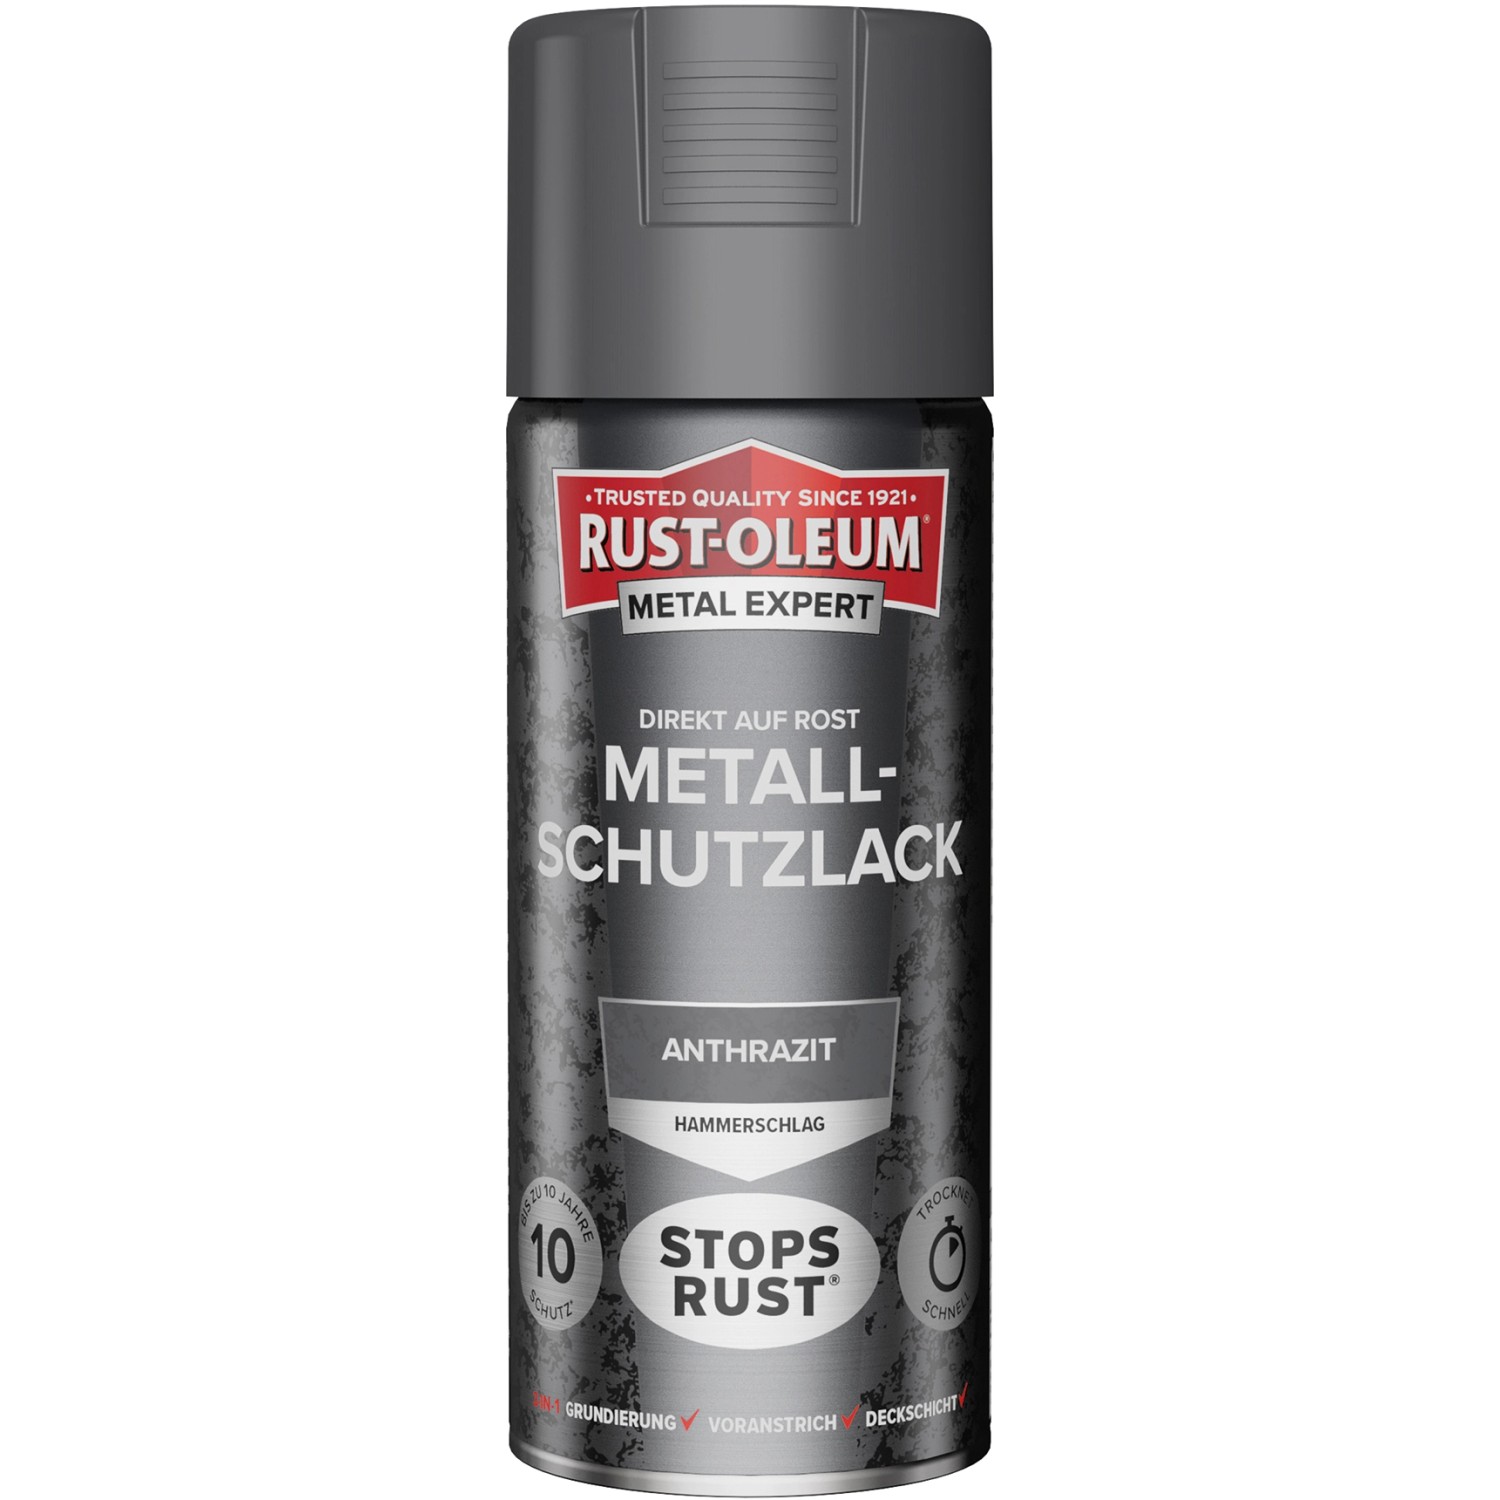 Rust-Oleum Metal Expert Hammerschlag Sprühfarbe Anthrazit 400 ml von Rust-Oleum